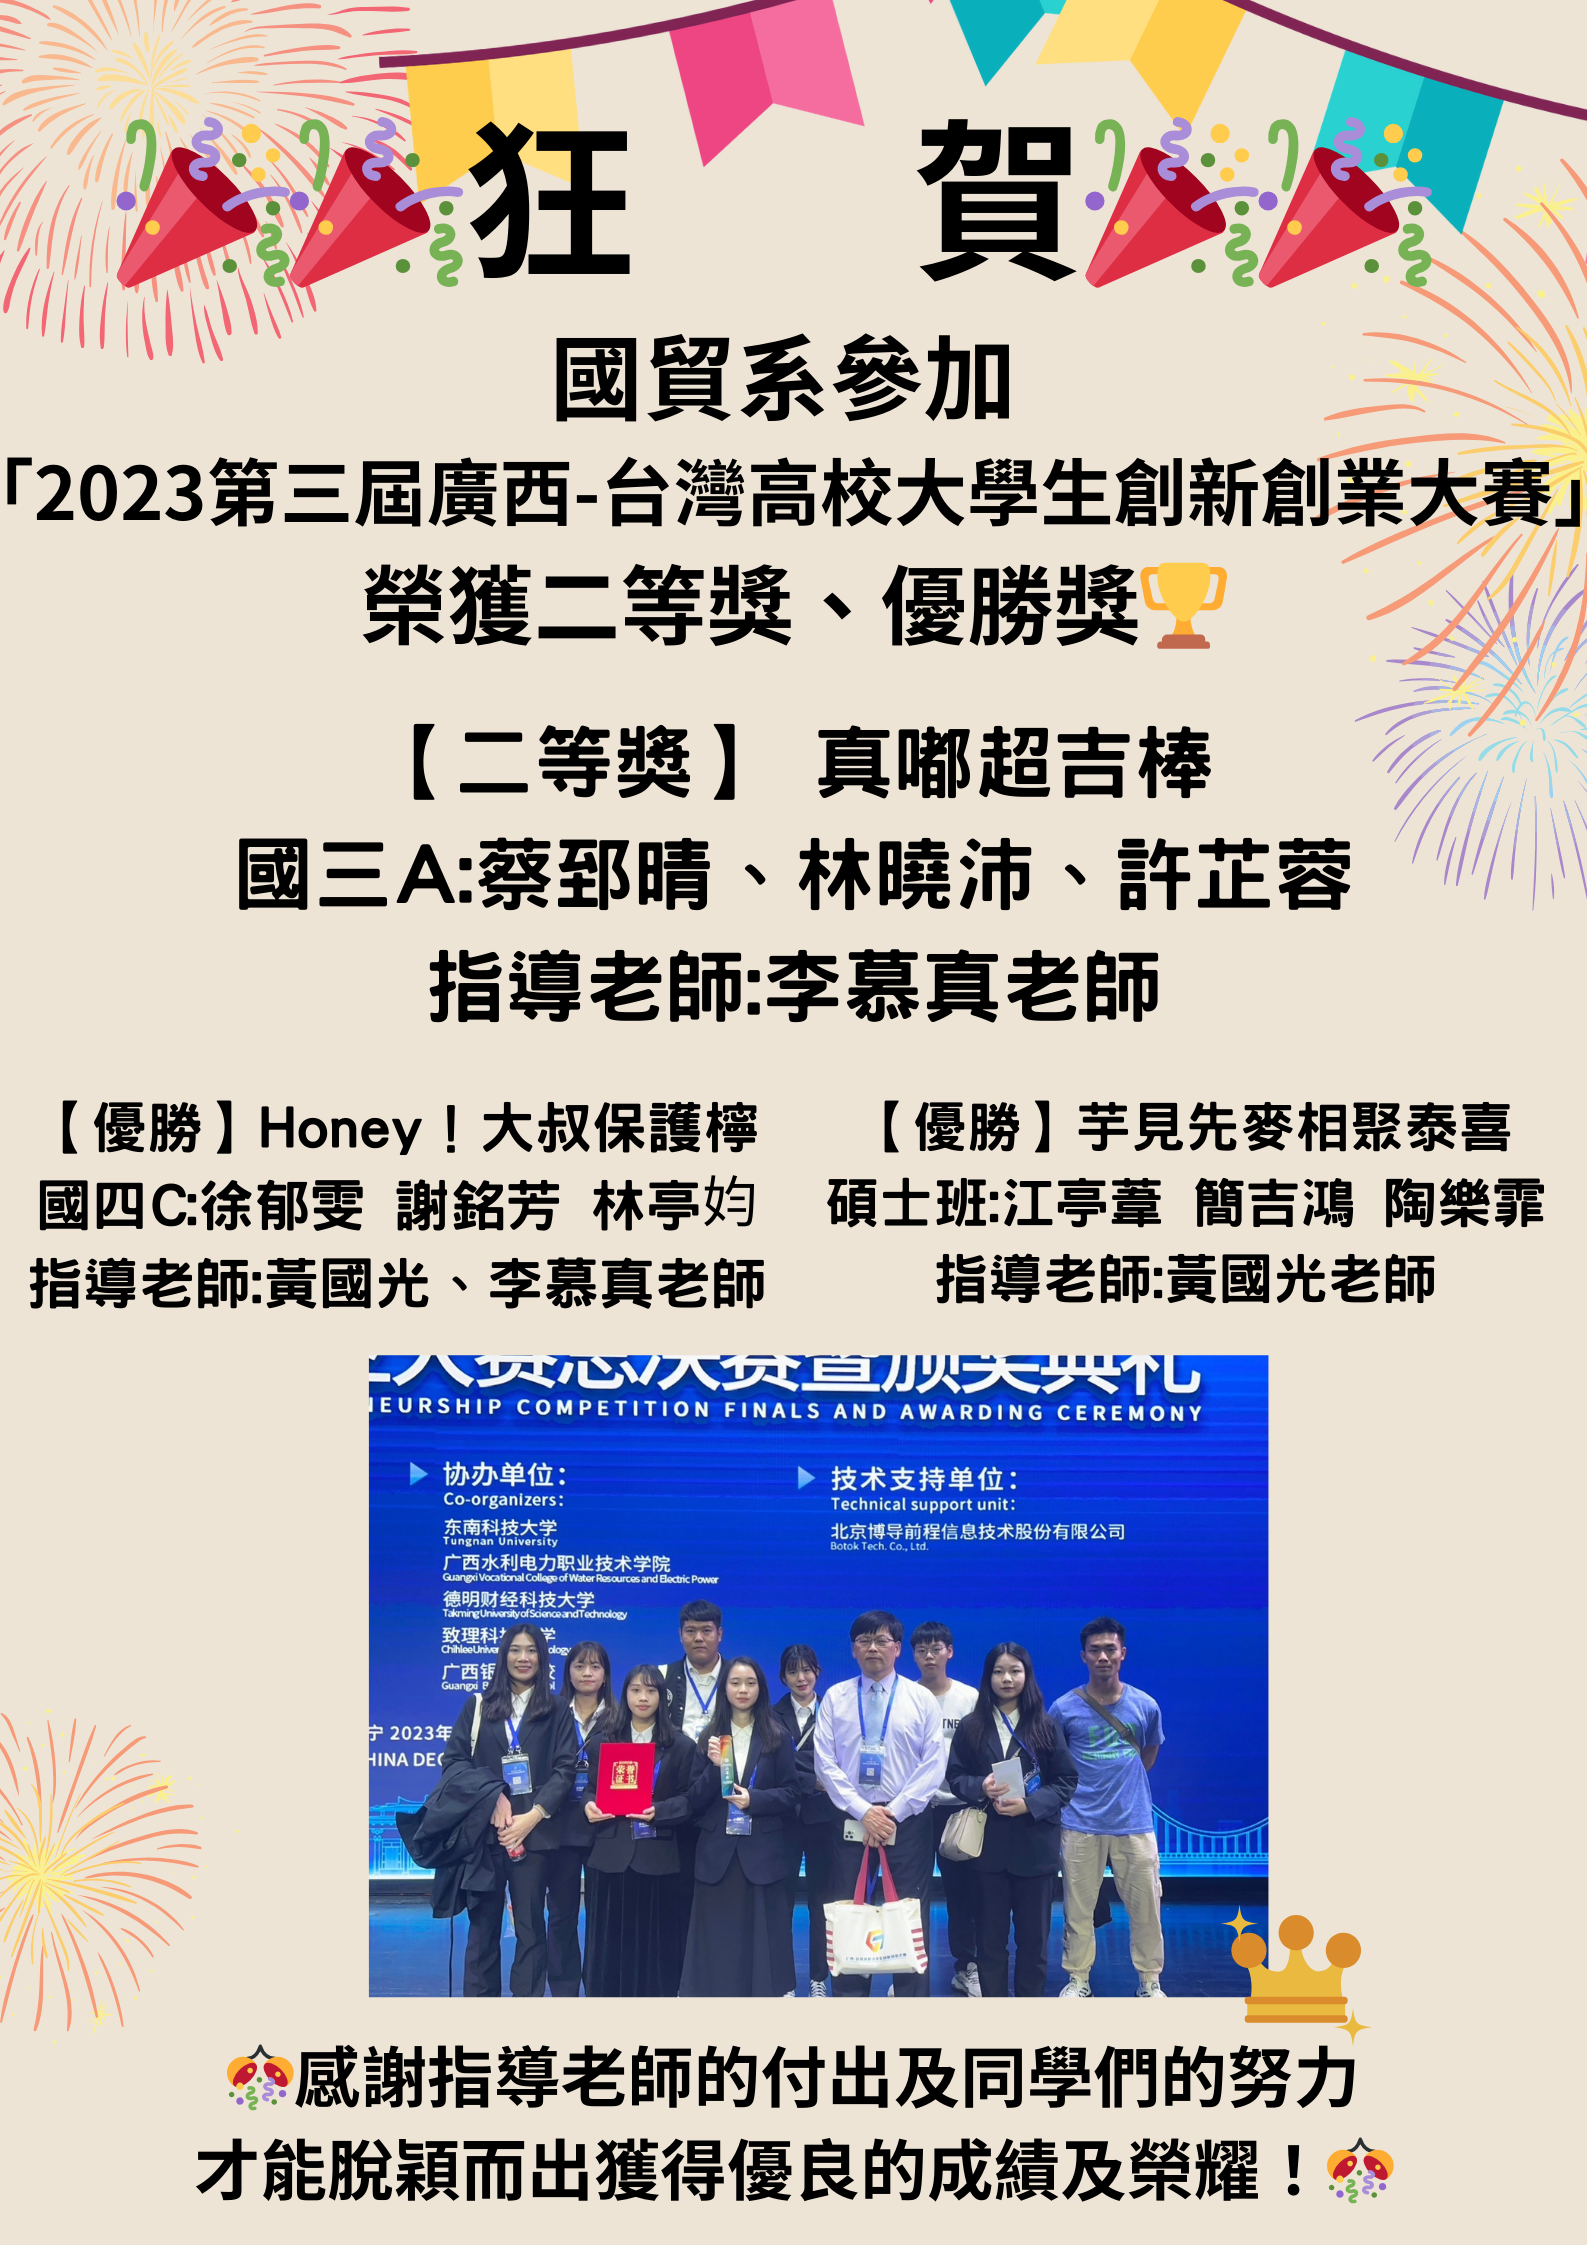 【國貿系】參加 「2023第三屆廣西-台灣高校大學生創新創業大賽」 共22所院校(51支隊伍)参赛，榮獲二等獎、優勝獎🏆